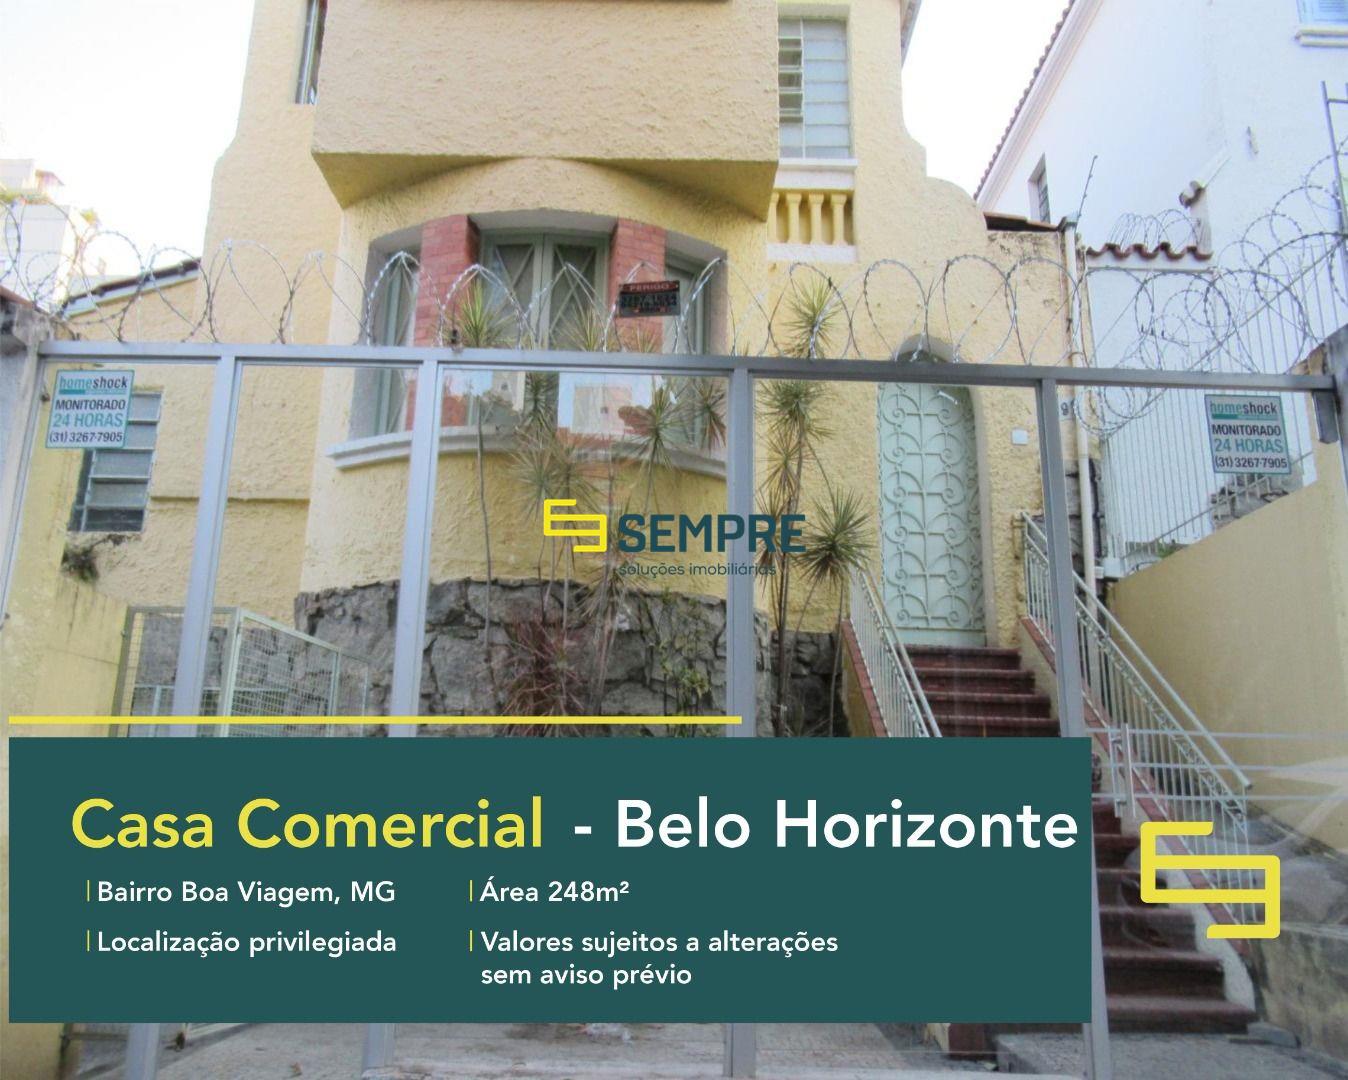 Casa comercial no bairro Boa Viagem em Belo Horizonte, excelente localização. O estabelecimento comercial conta com área de 248 m².